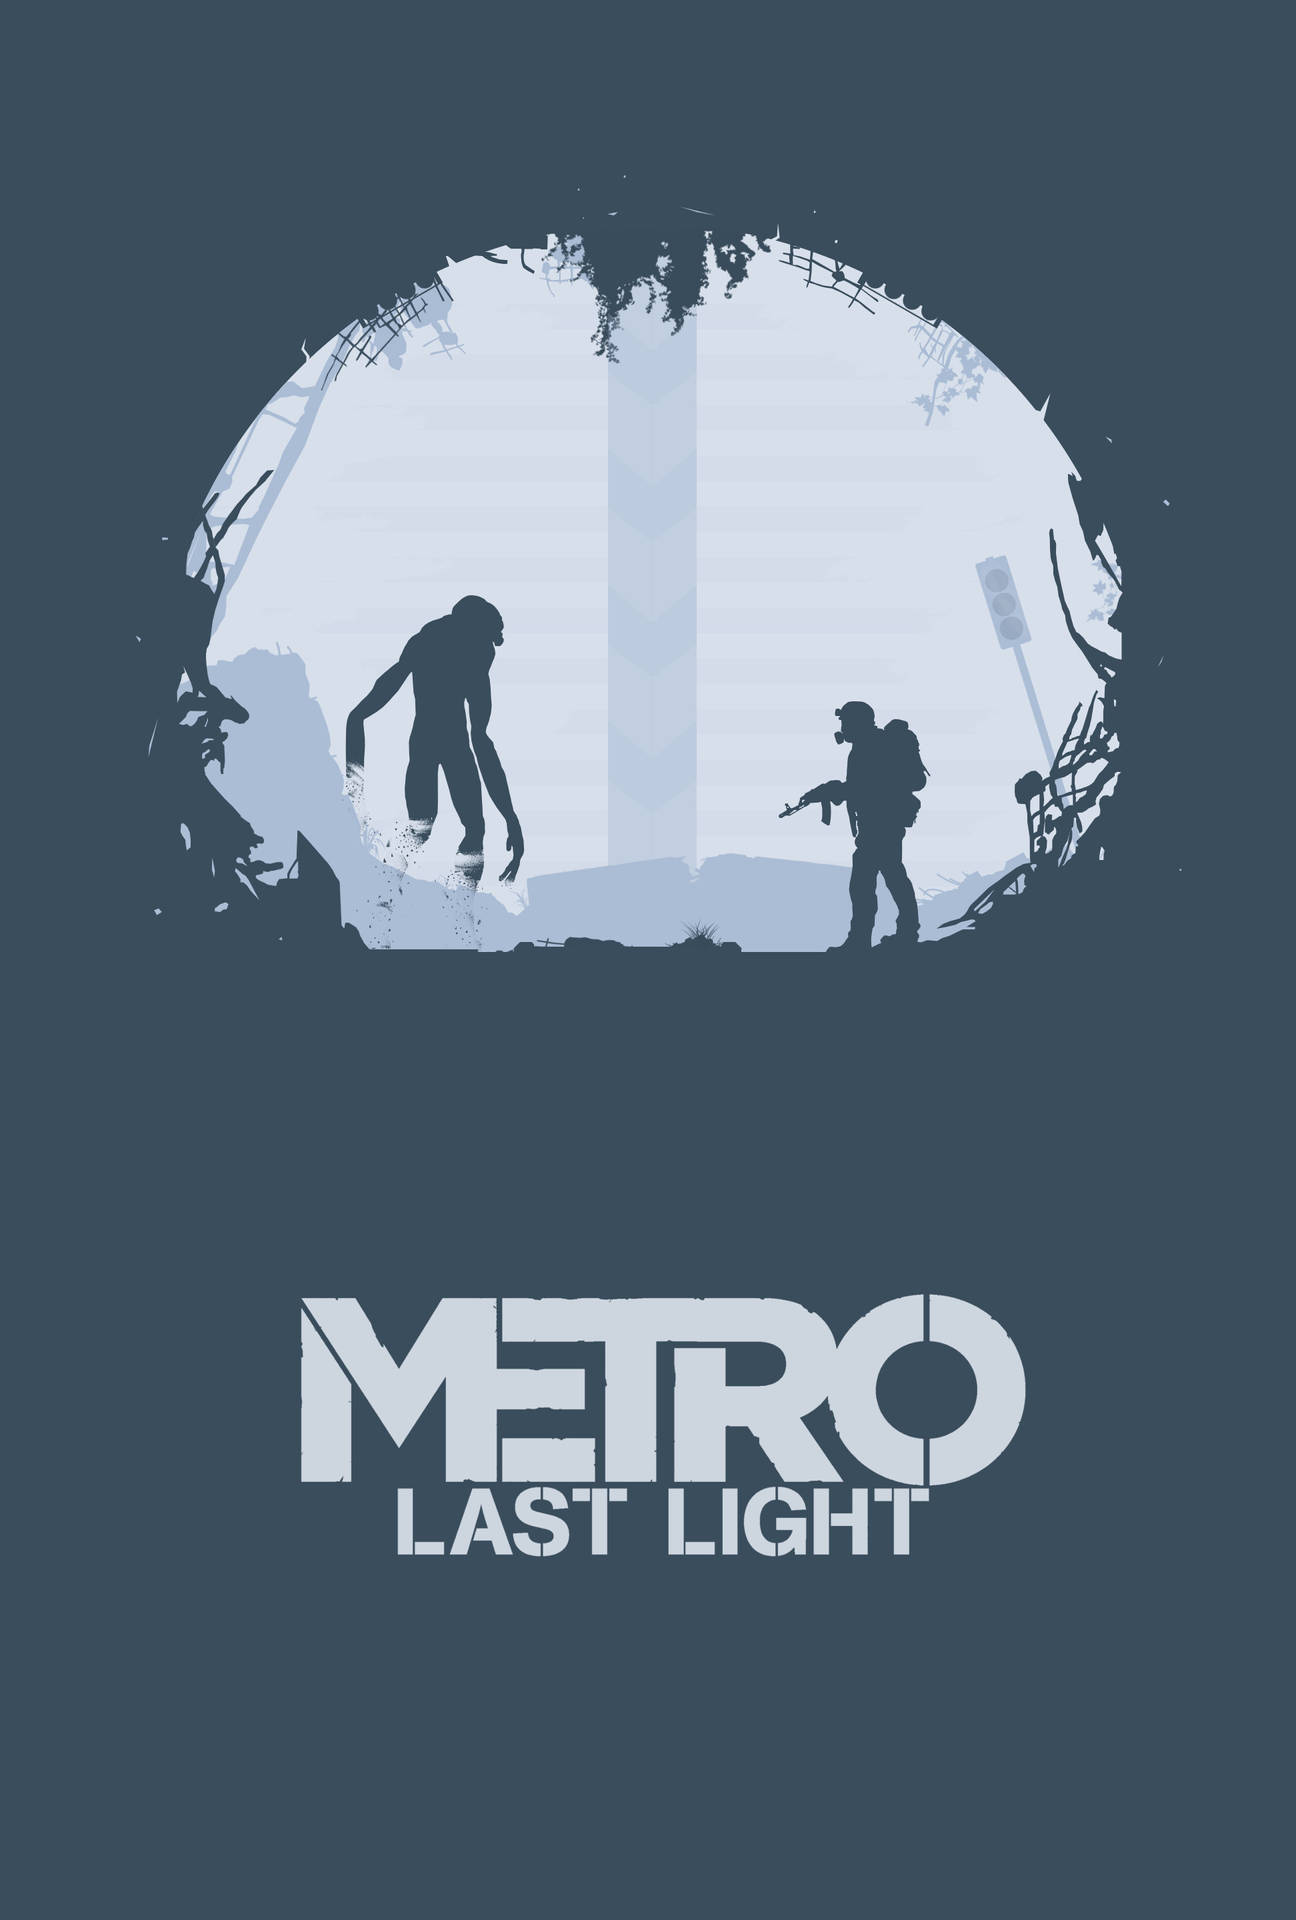 Metro Telefon Sidste Lys Kunst: Tag et smukt snapshot af lysstråler, der strømmer gennem træerne på en natlig kyst. Wallpaper